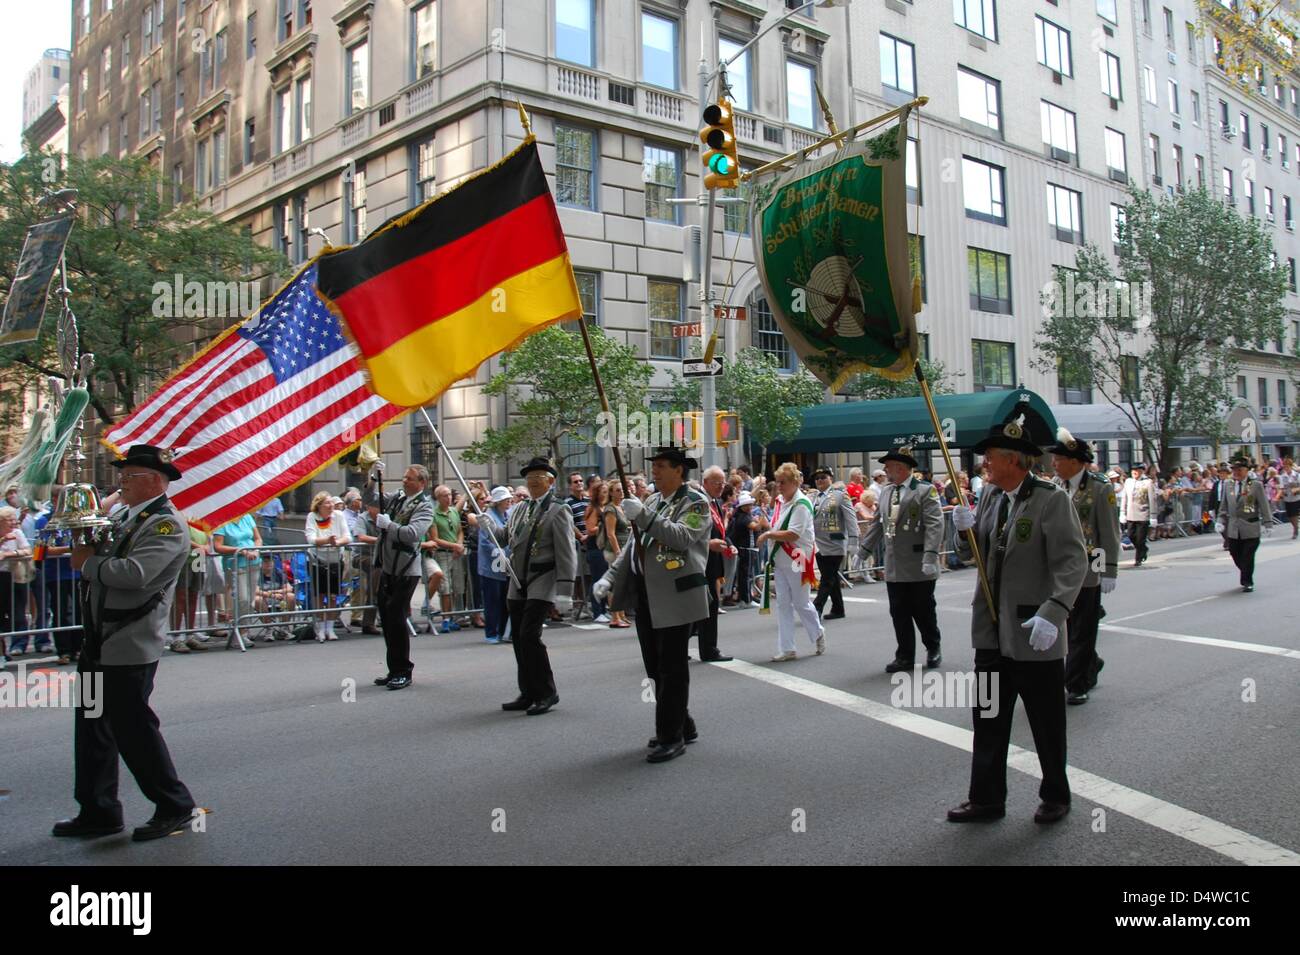 Teilnehmer der Steuben-Parade mit deutschen und US-Flaggen marschieren in Tracht, am Samstag (25.09.2010) a New York. Die Steuben-Parade in New York hat wieder zehntausende Zuschauer begeistert. Mit der jährlichen Parade soll die Kultur der deutschen Einwanderer bewahrt werden. (Zu dpa-KORR '"Deutschland ist cool!": New York feiert Steuben-Parade' vom 26.09.2010) Foto: Chris Melze Foto Stock